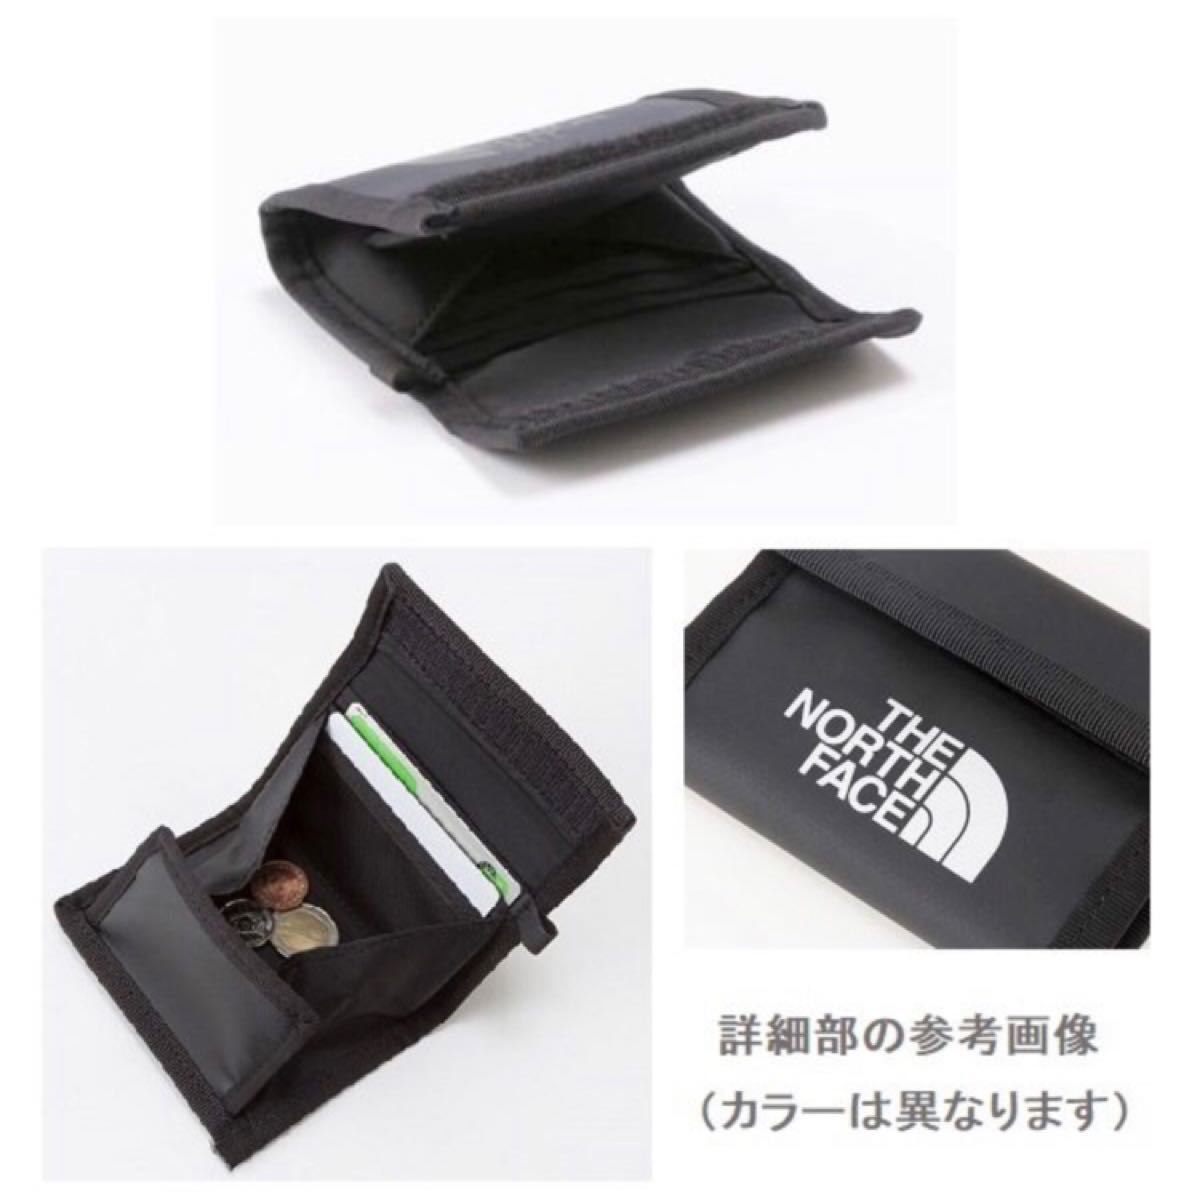 THE NORTH FACE BC Wallet Mini 財布 ノースフェイス BCワレットミニ NM82081 K ブラック★